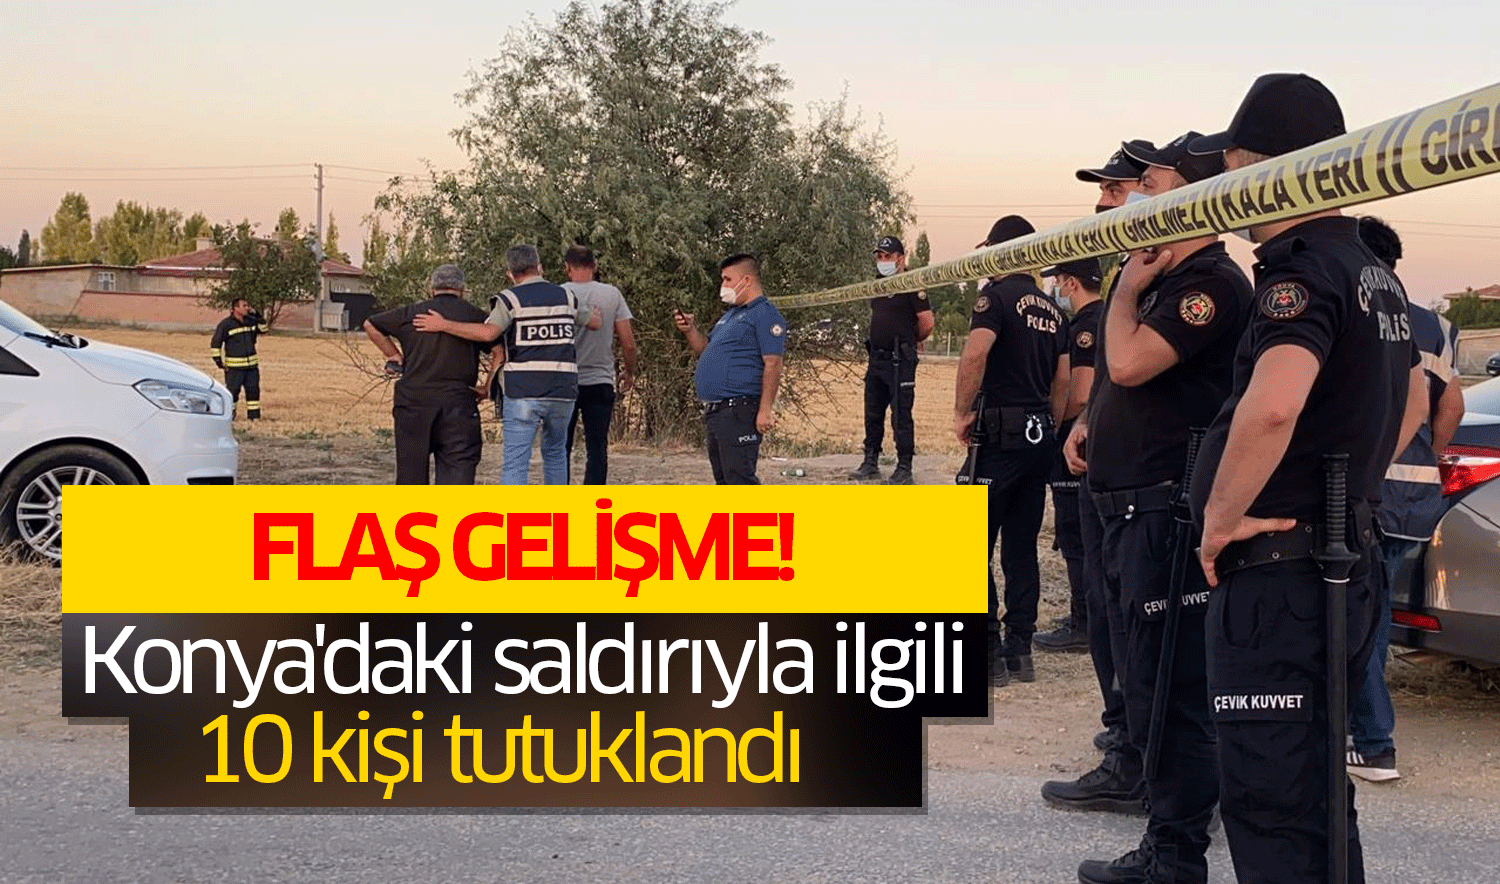 Konya’da 7 kişinin öldürüldüğü saldırıya ilişkin yeni gelişme